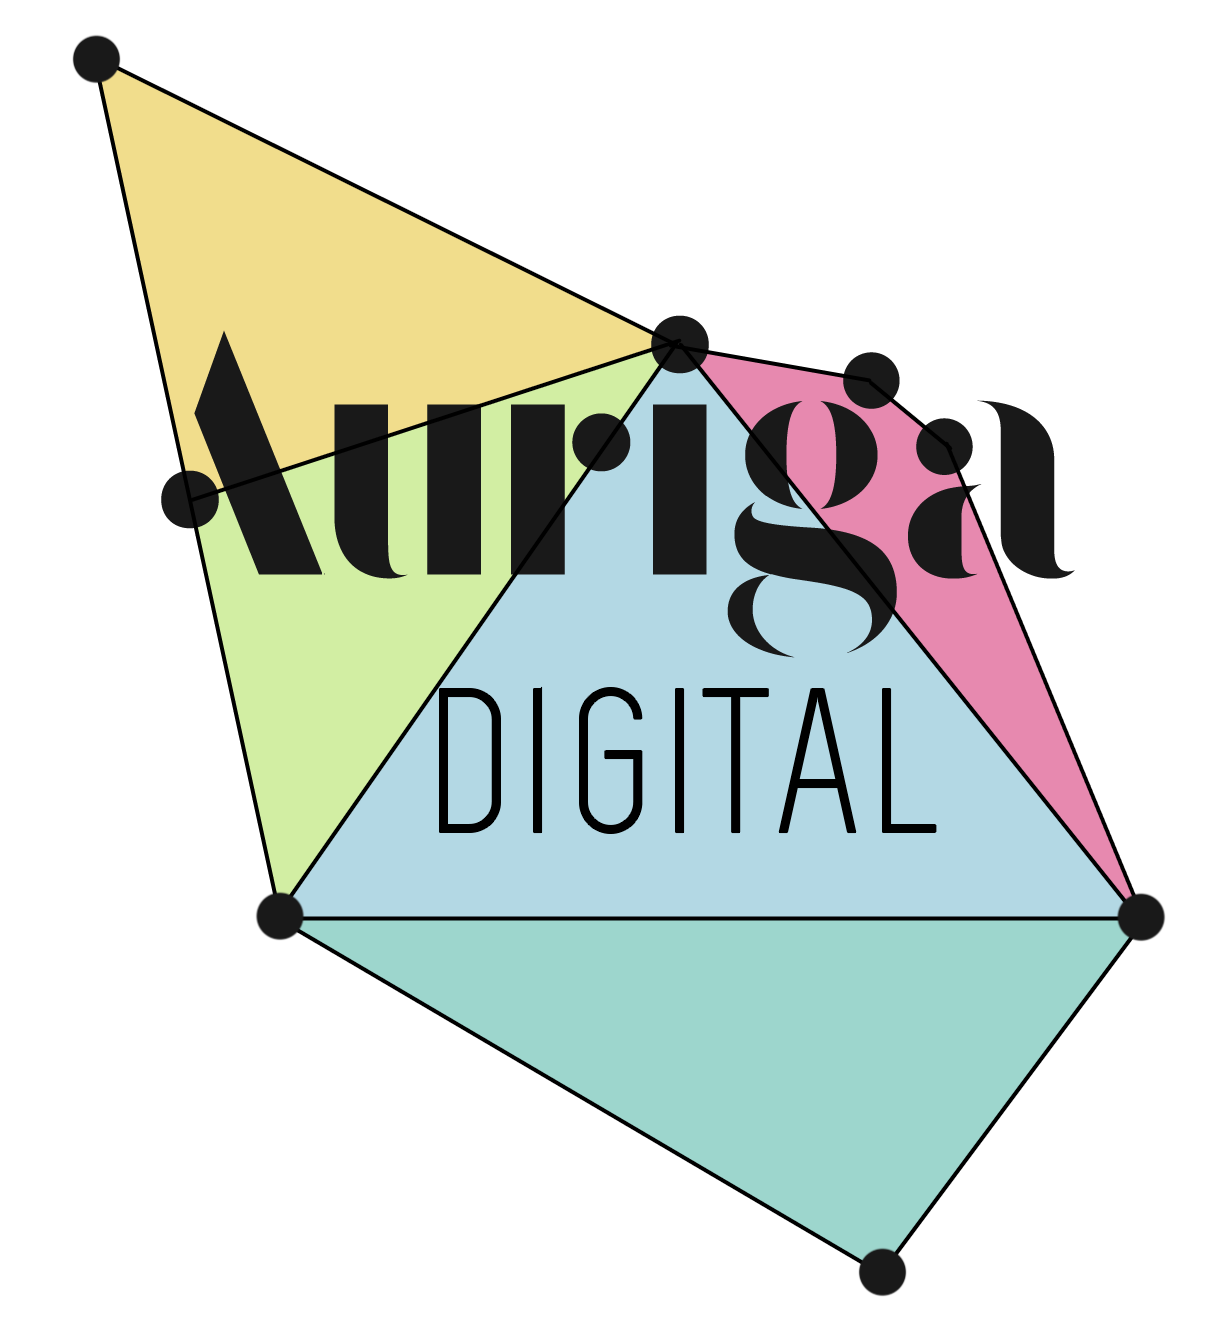 Auriga Digital